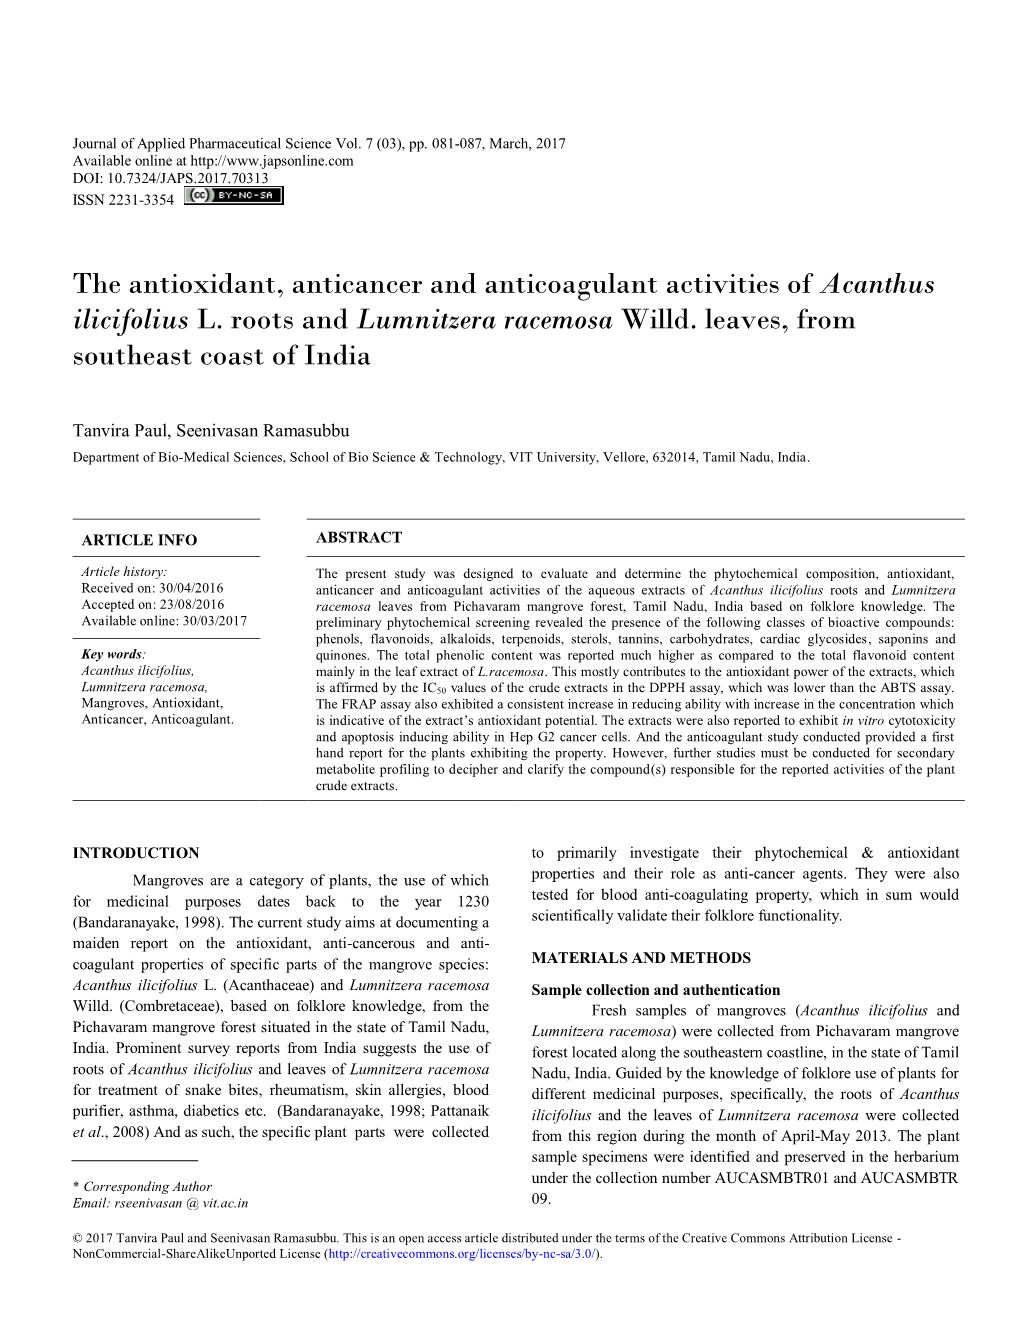 The Antioxidant, Anticancer and Anticoagulant Activities of Acanthus Ilicifolius L